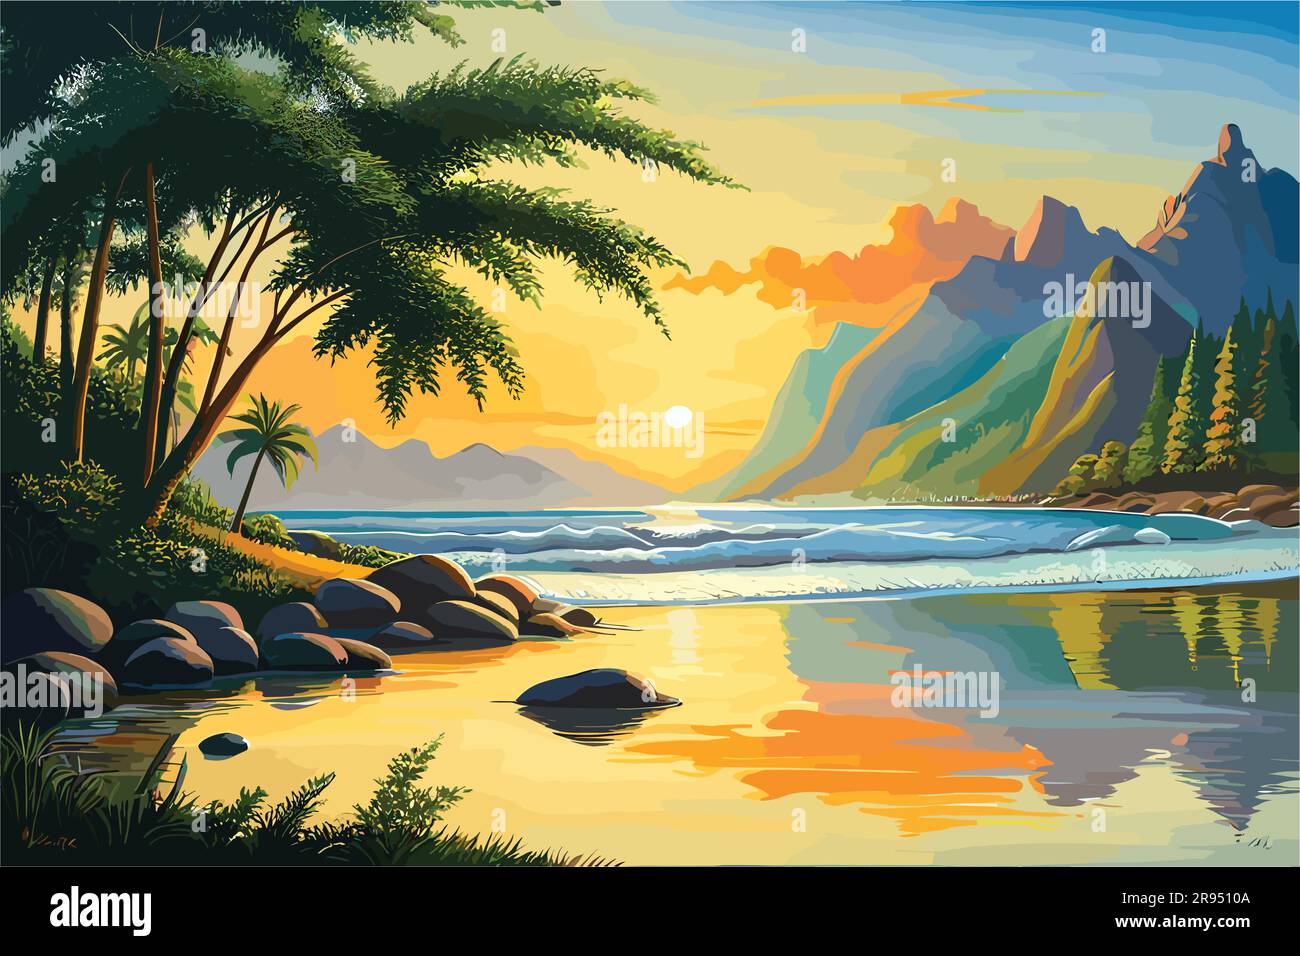 Farbenfrohe Meereslandschaft mit Insel, Morgen auf dem Meer, Welle, Illustration, Ölgemälde auf einer Leinwand. Stock Vektor